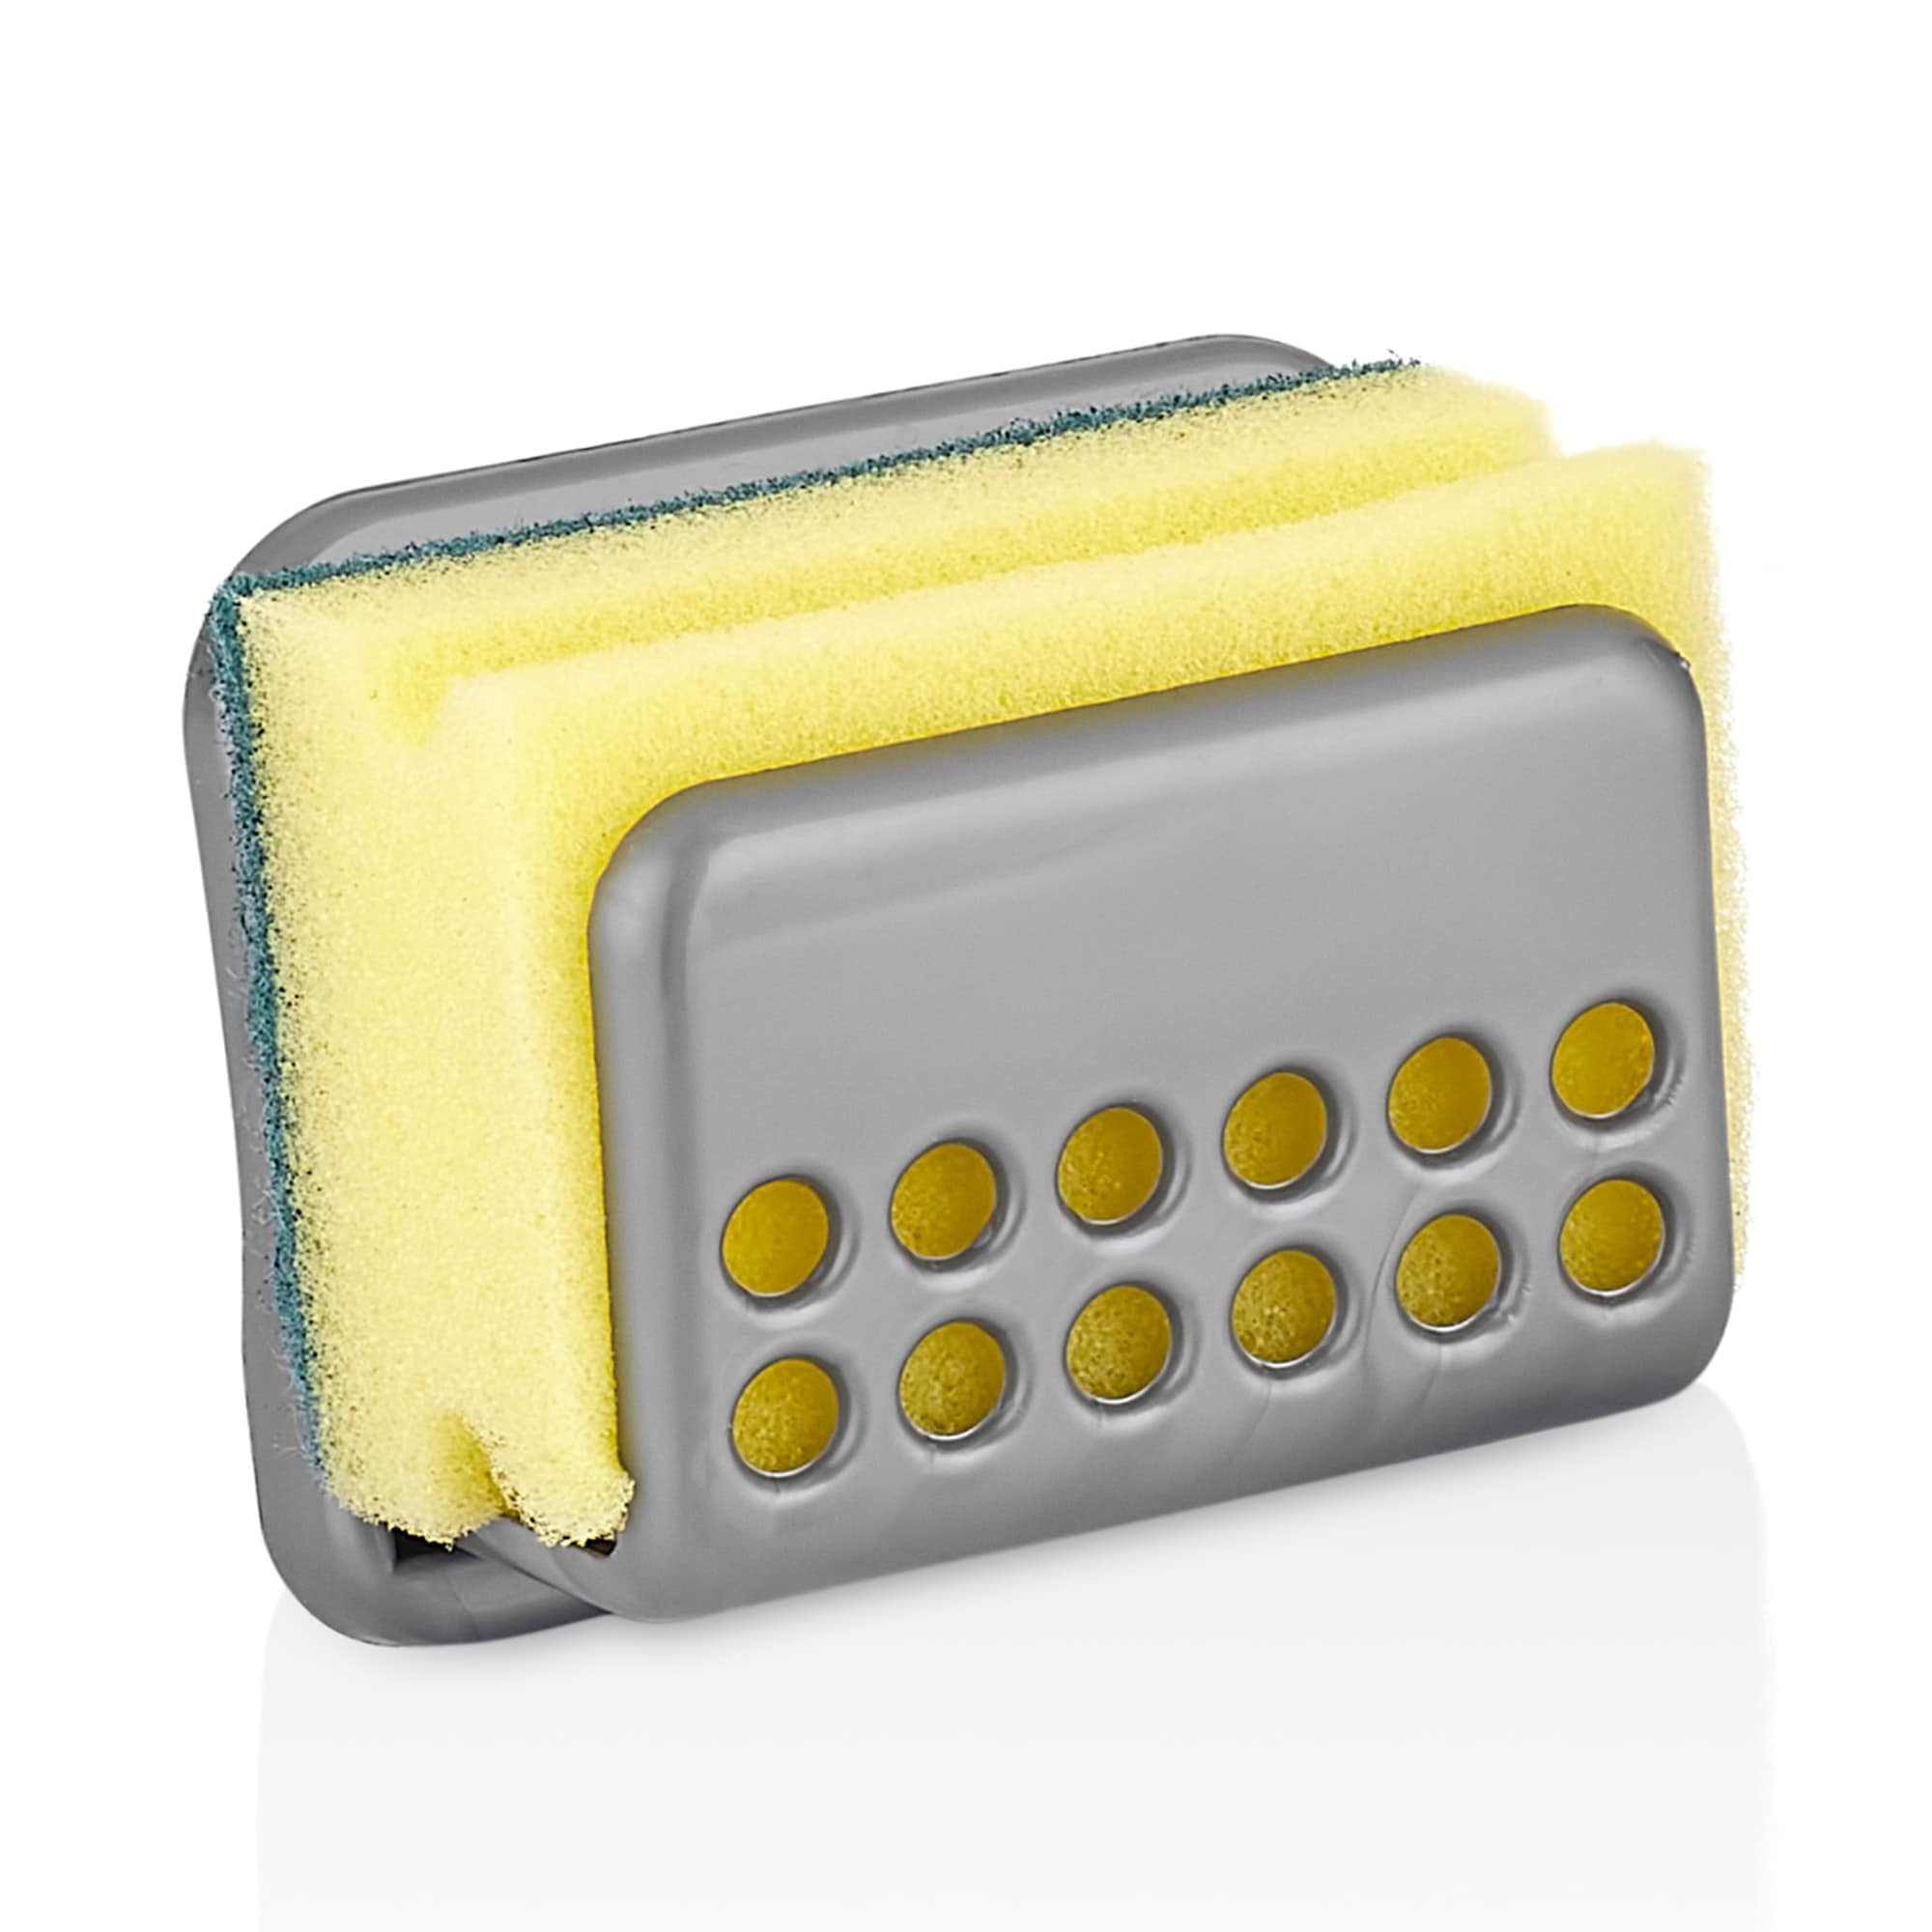 https://ak1.ostkcdn.com/images/products/is/images/direct/5d2c4fa6a53e2d885ec82404a65cc6b3cf24dc11/2-Pcs-Kitchen-Sink-Sponge-Holder%2C-Kitchen-Sink-Basket-for-Sponge-or-Soap%2C-Sink-Sponge-Caddy%2C-Dish-Cloth-Holder.jpg